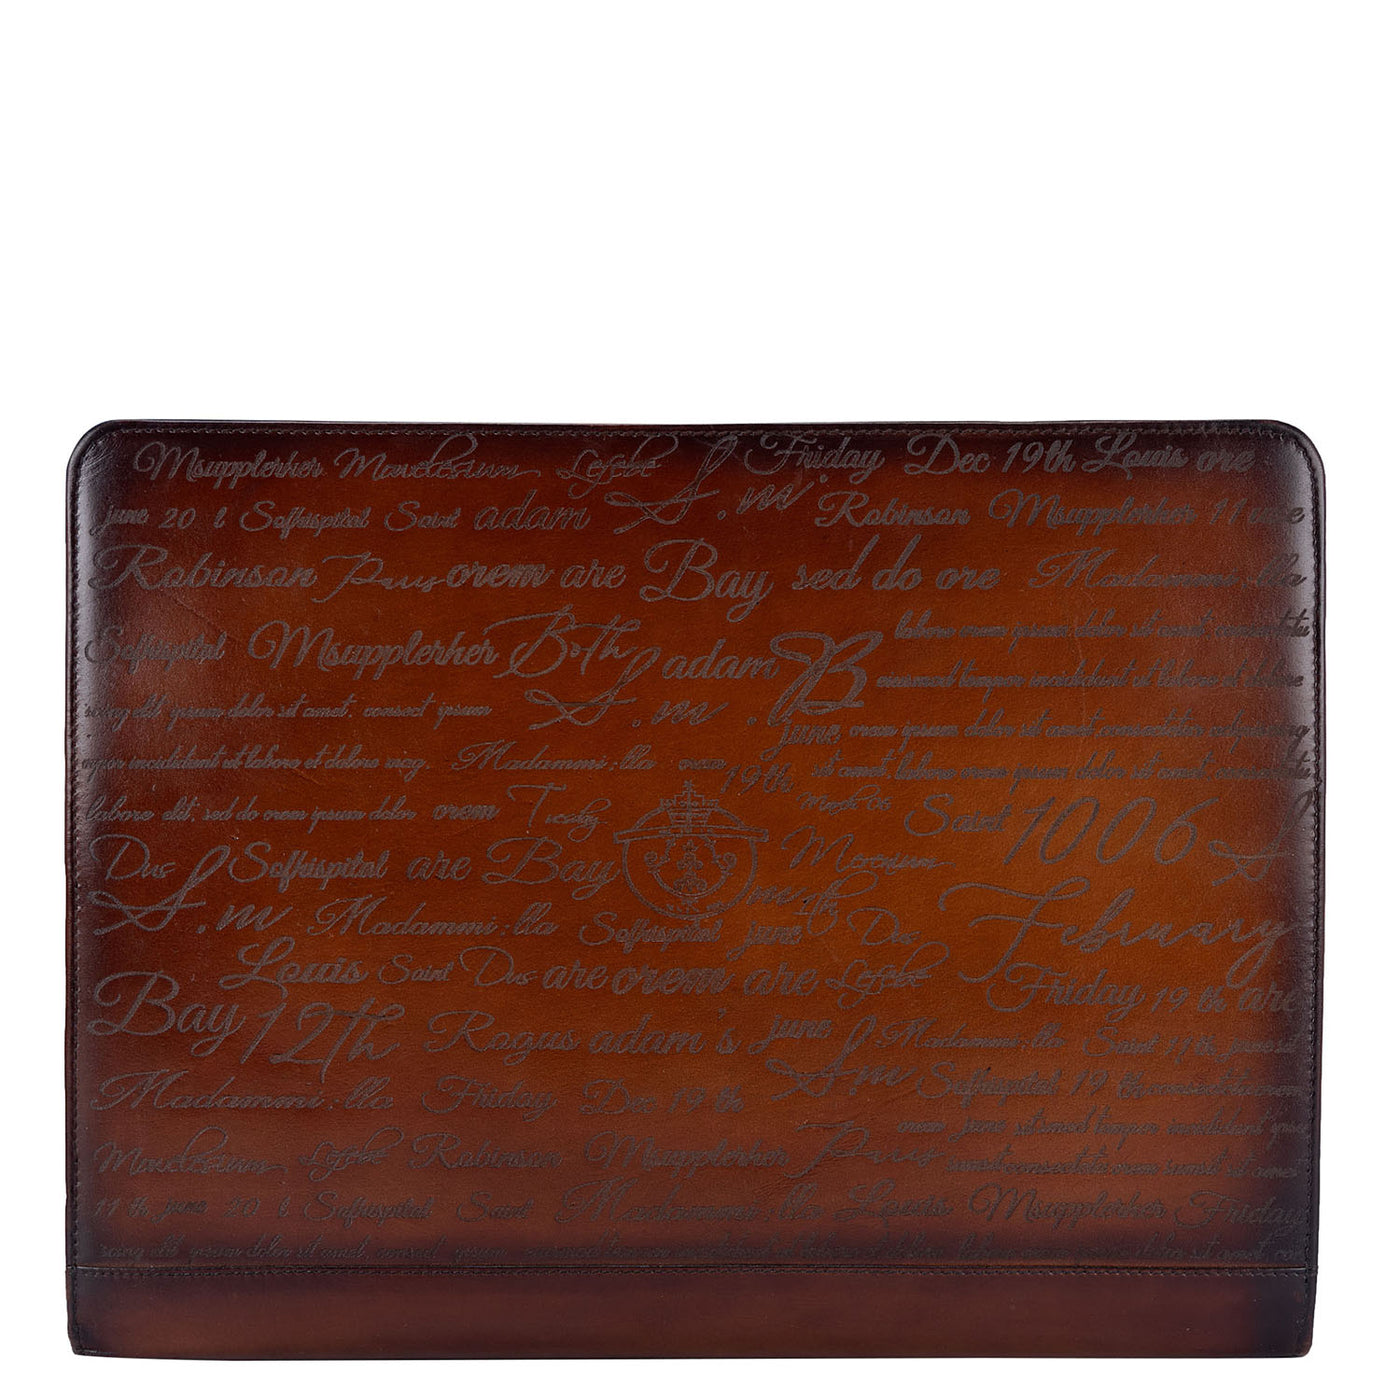 Signato Leather Folder - Cognac